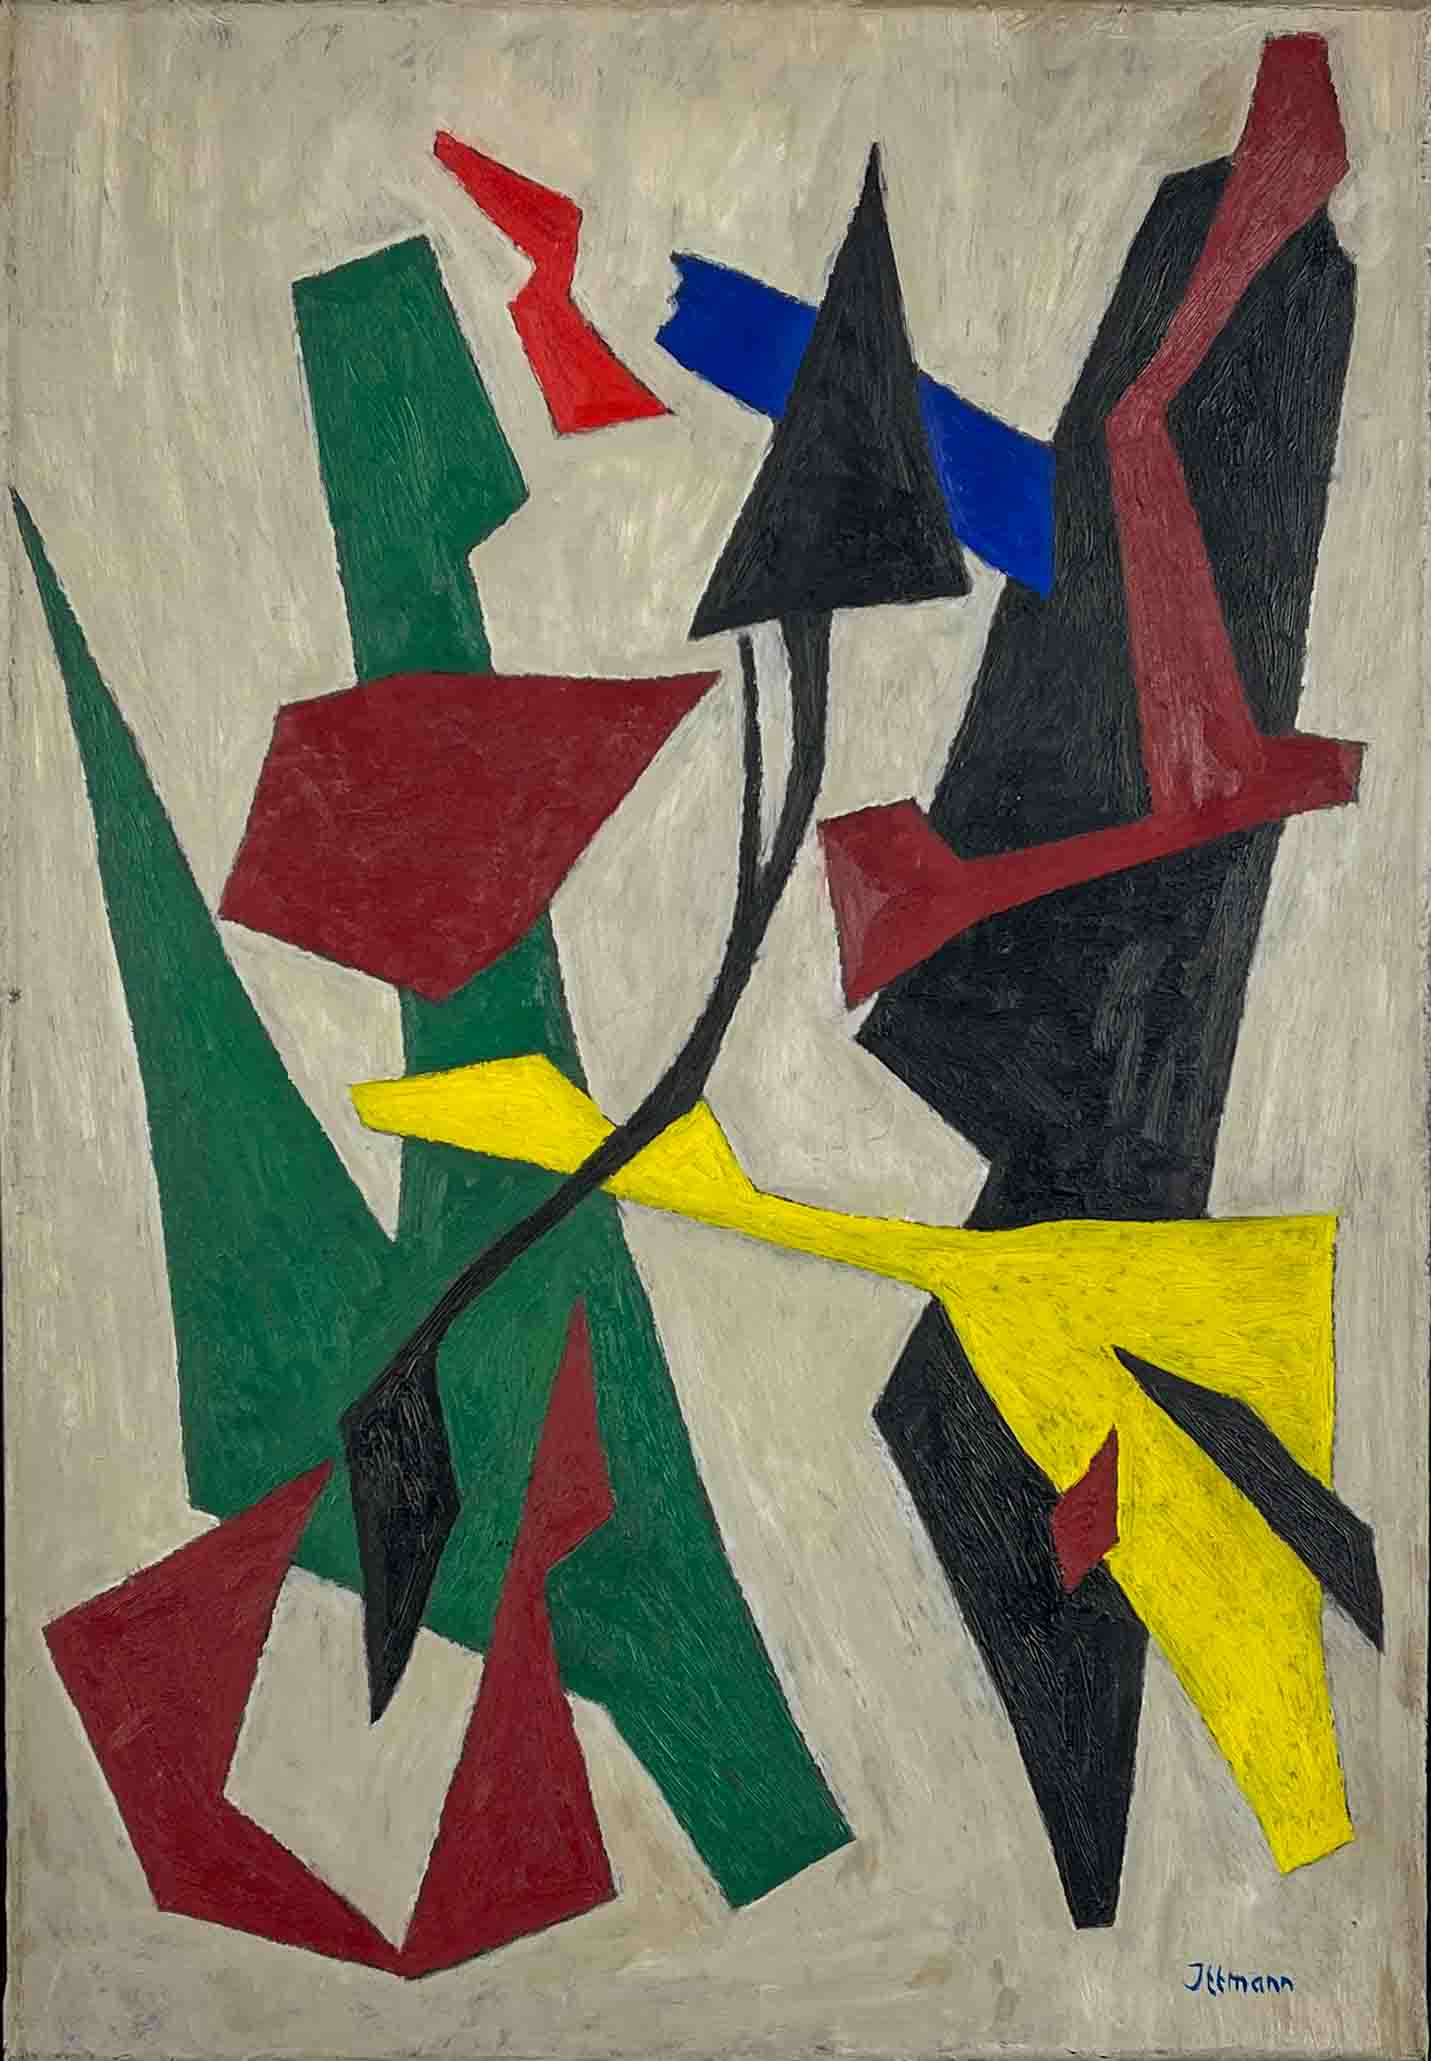 Hans Ittmann – Abstract Composition, 1945 – oil on canvas, framed